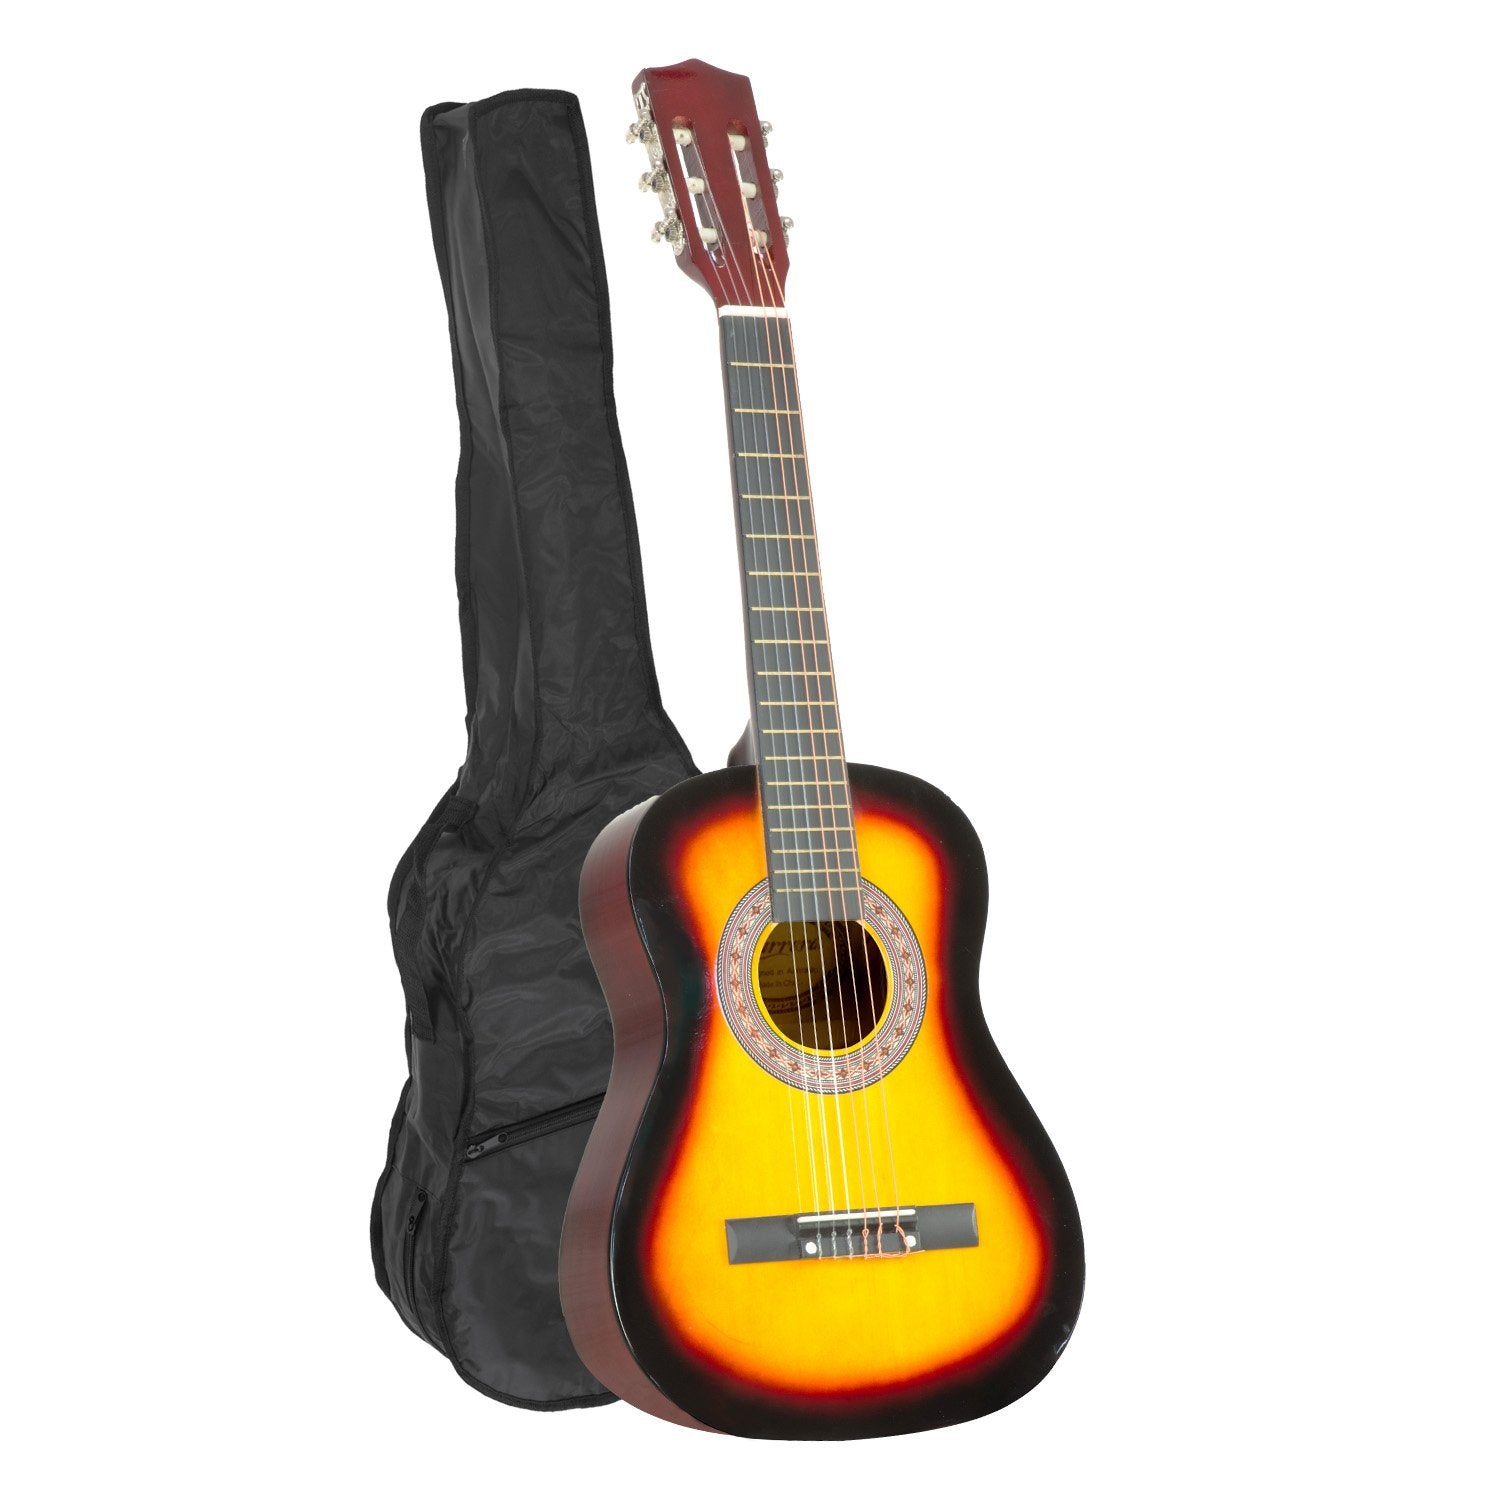 34" Acoustic Wooden Kids Guitar w/ Bag & Picks - Karrera